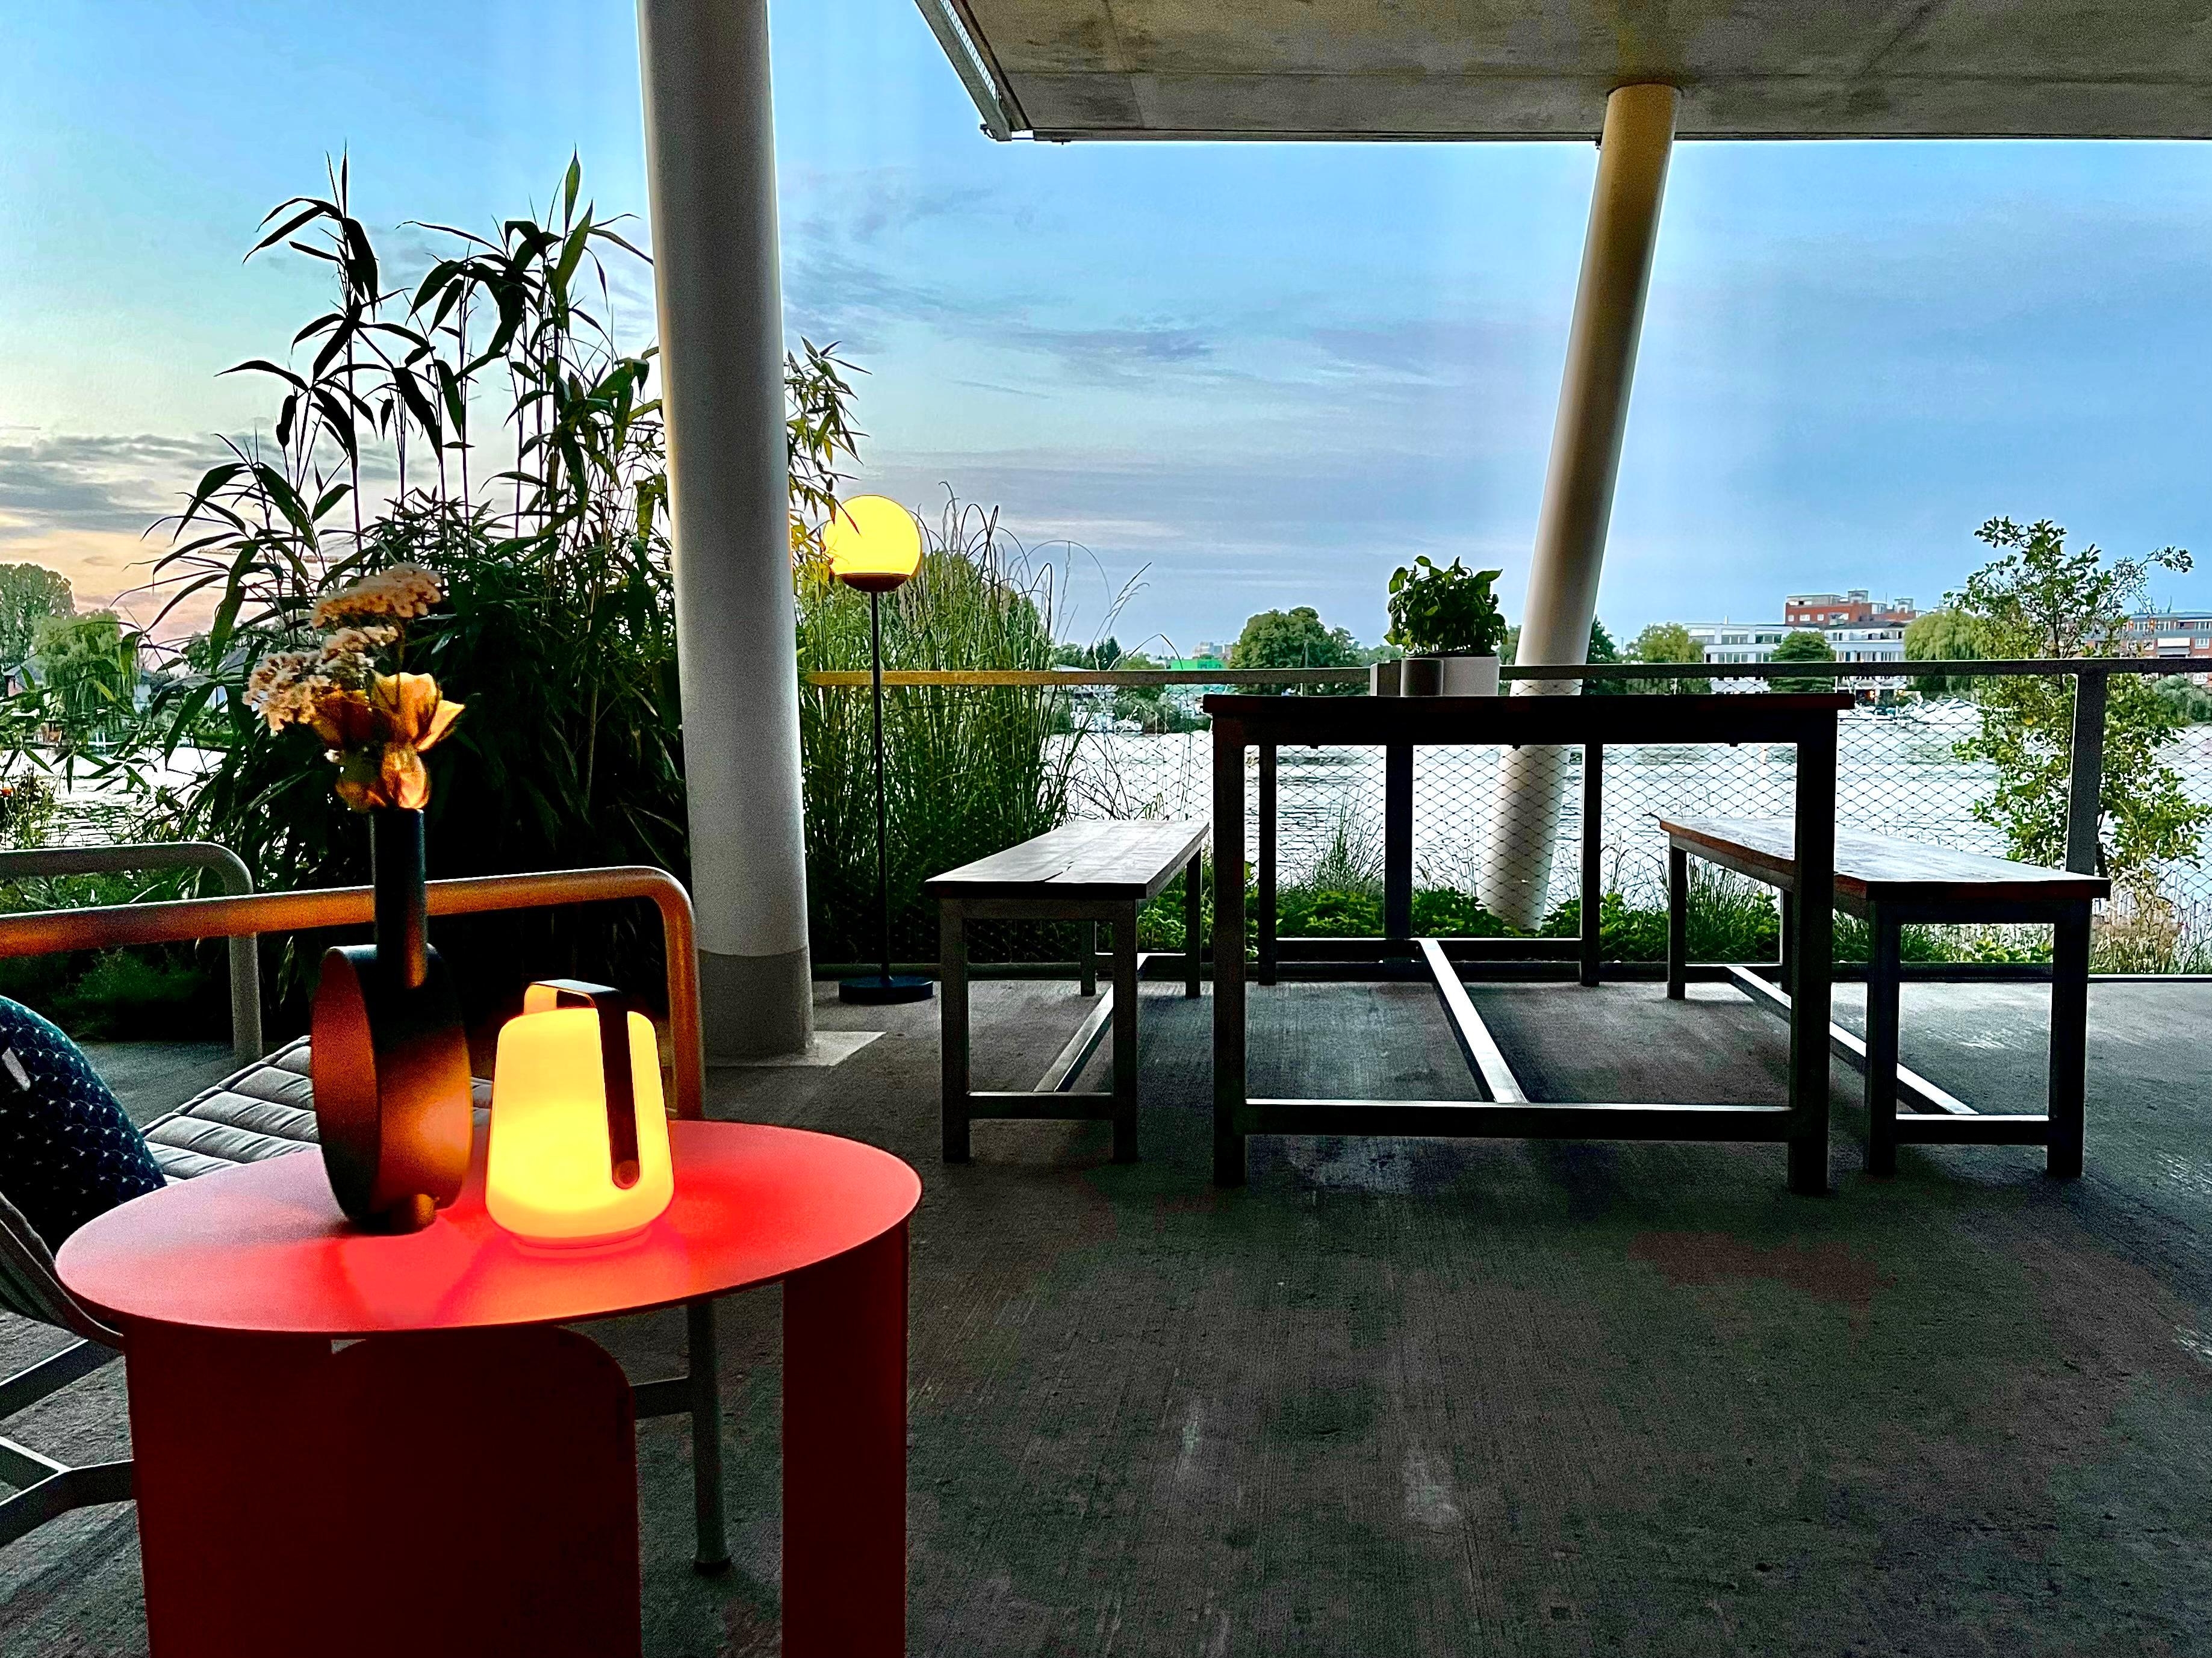 Blick auf unsere Terrasse und einer tollen Abendstimmung. #neuhier #summerfeeling #terrasse #Abendstimmung